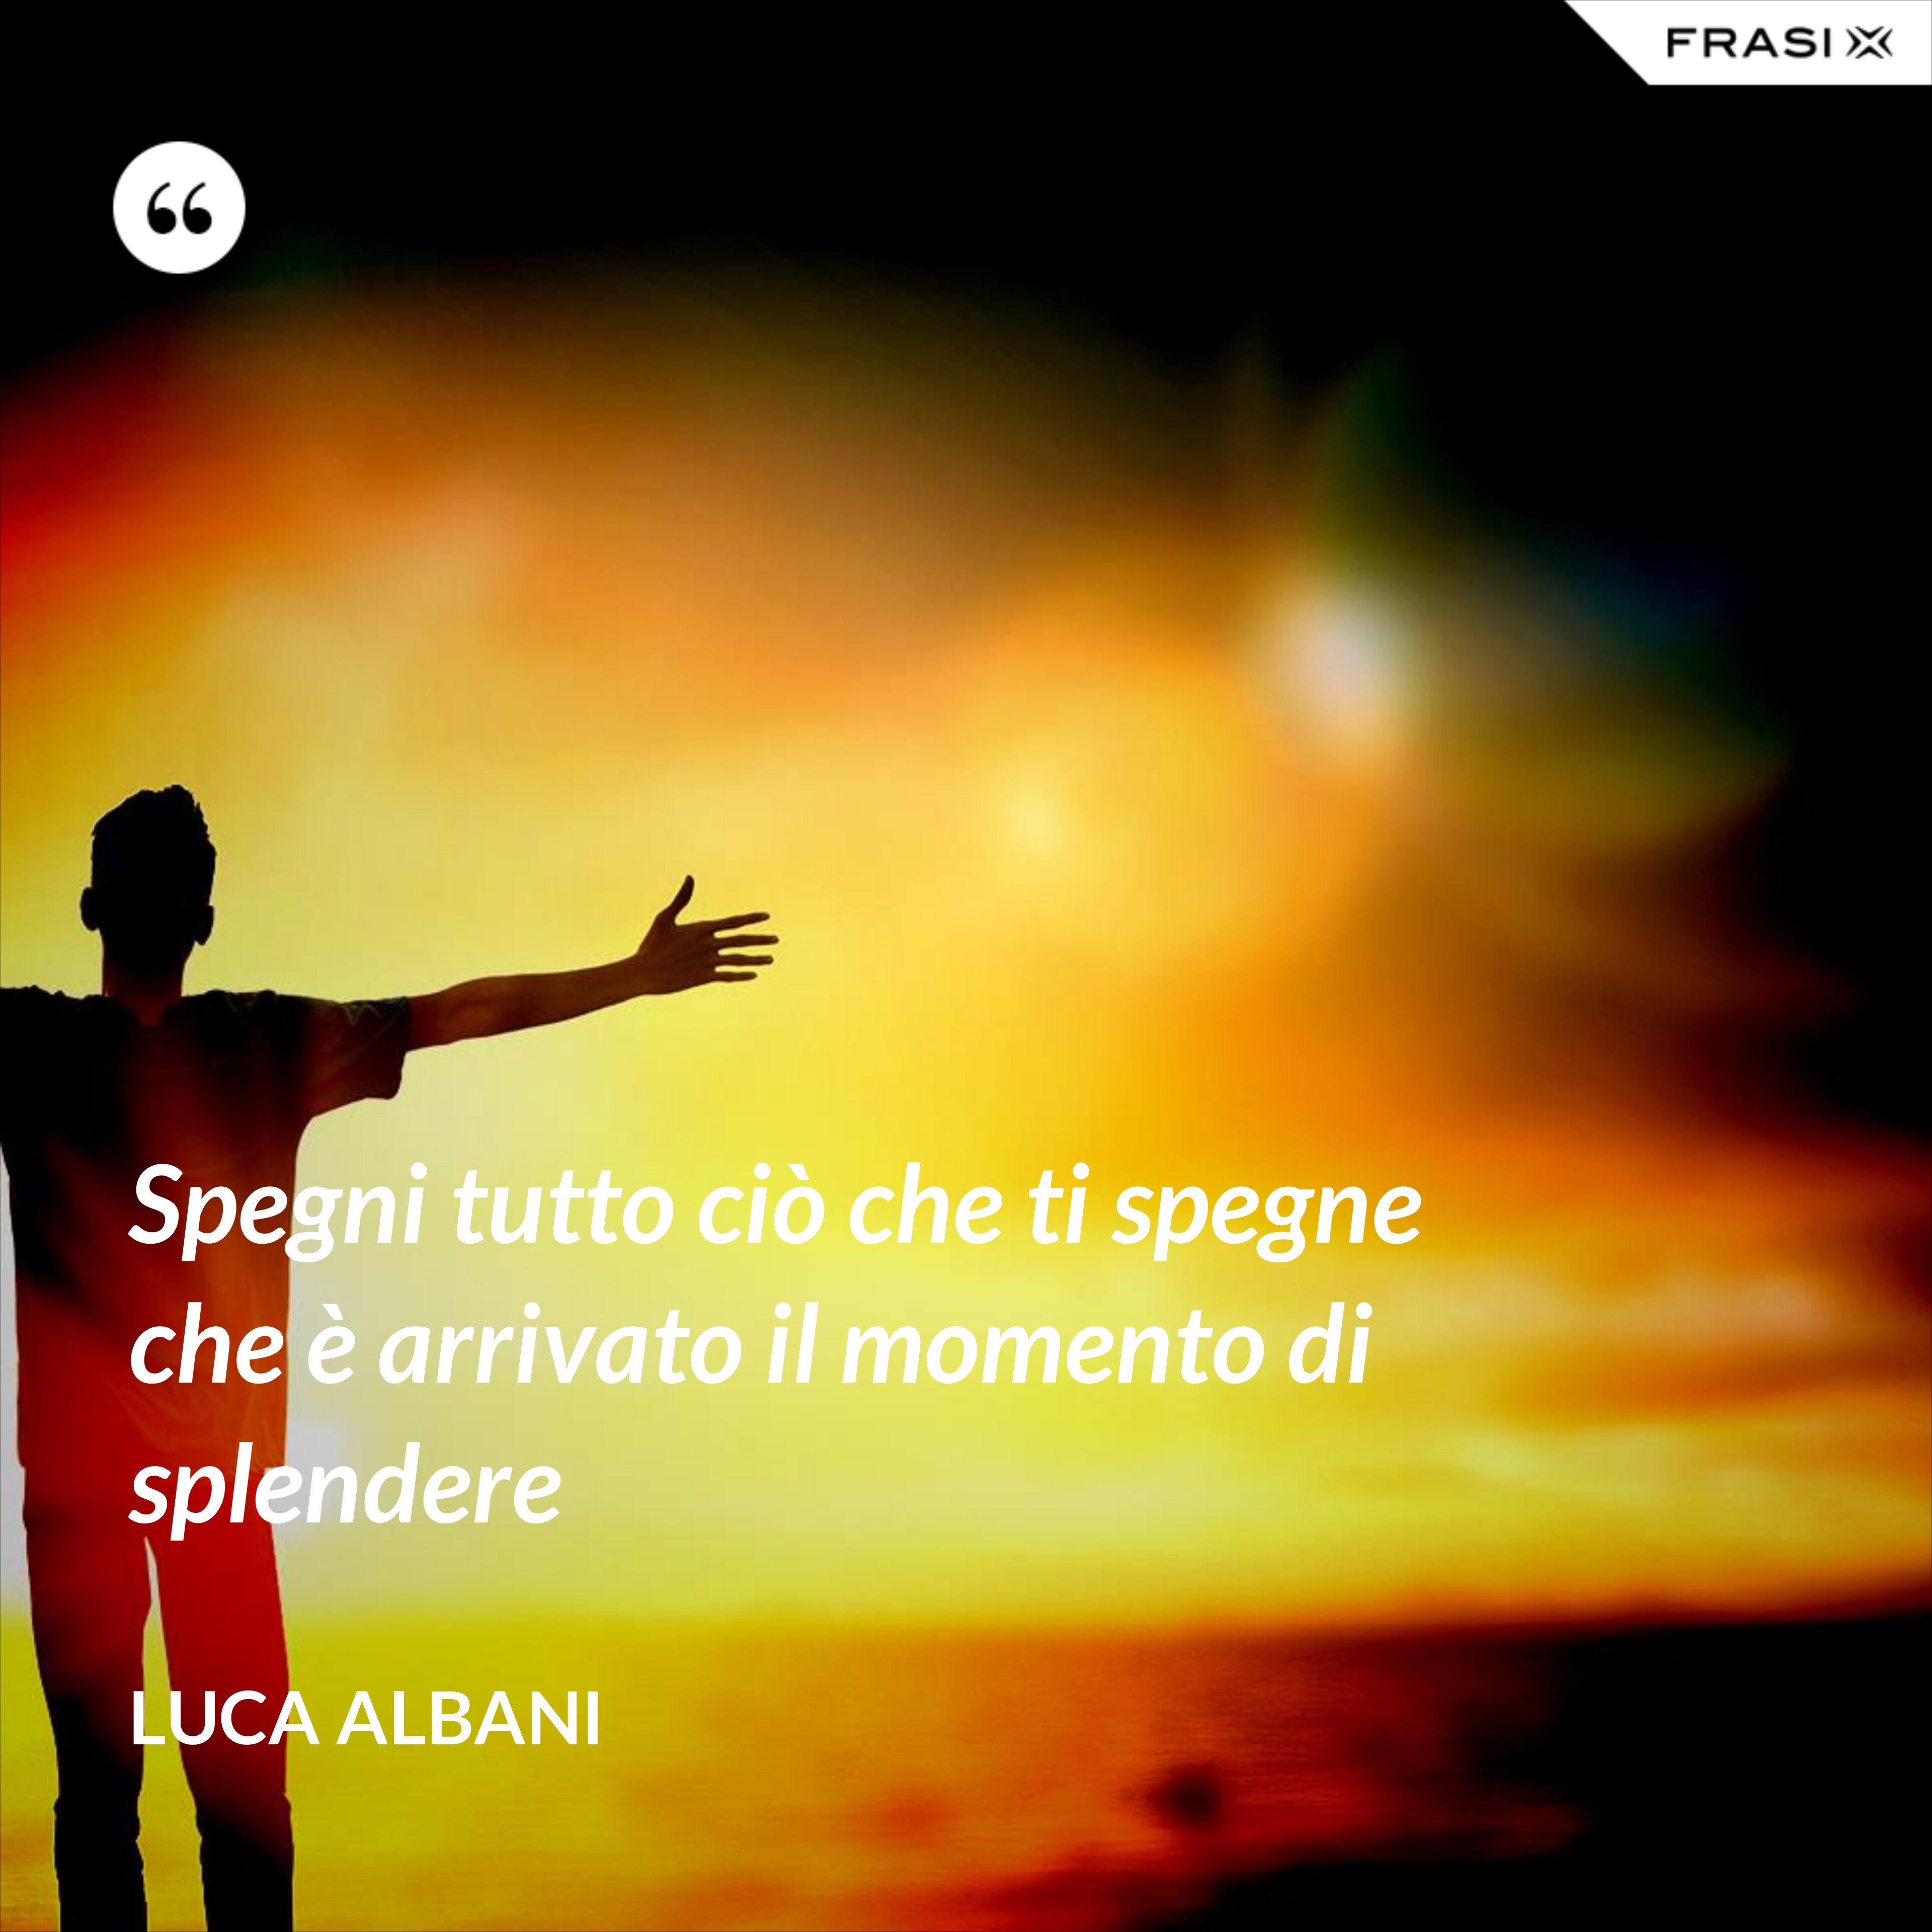 Spegni tutto ciò che ti spegne che è arrivato il momento di splendere - Luca Albani